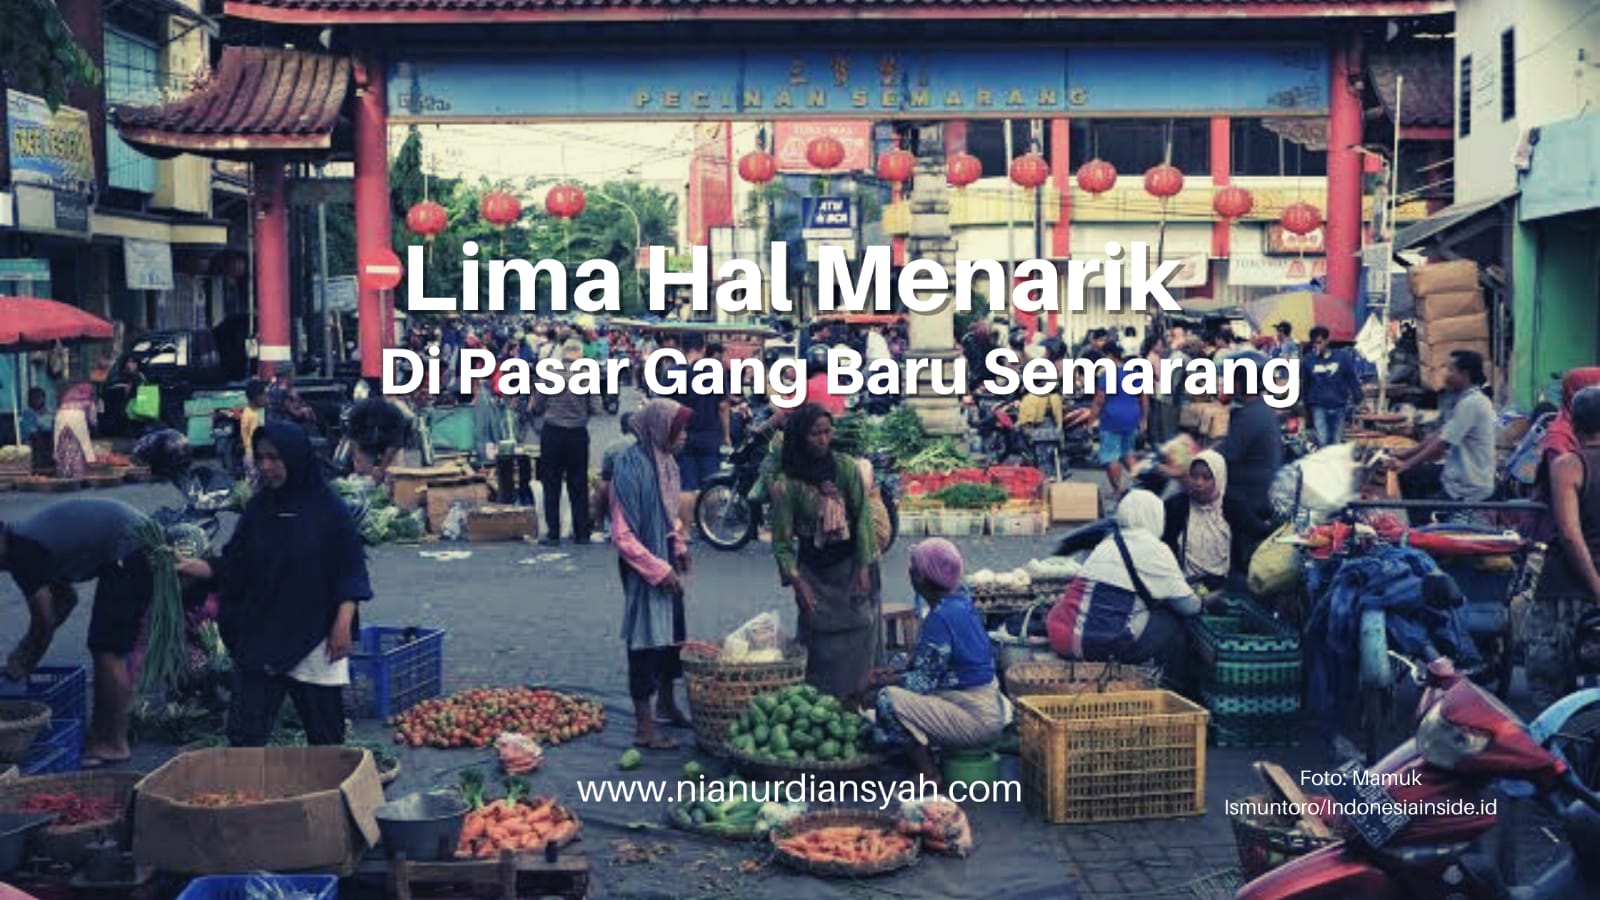 Lima Hal Menarik Yang Bisa Ditemui Di Pasar Gang Baru Semarang